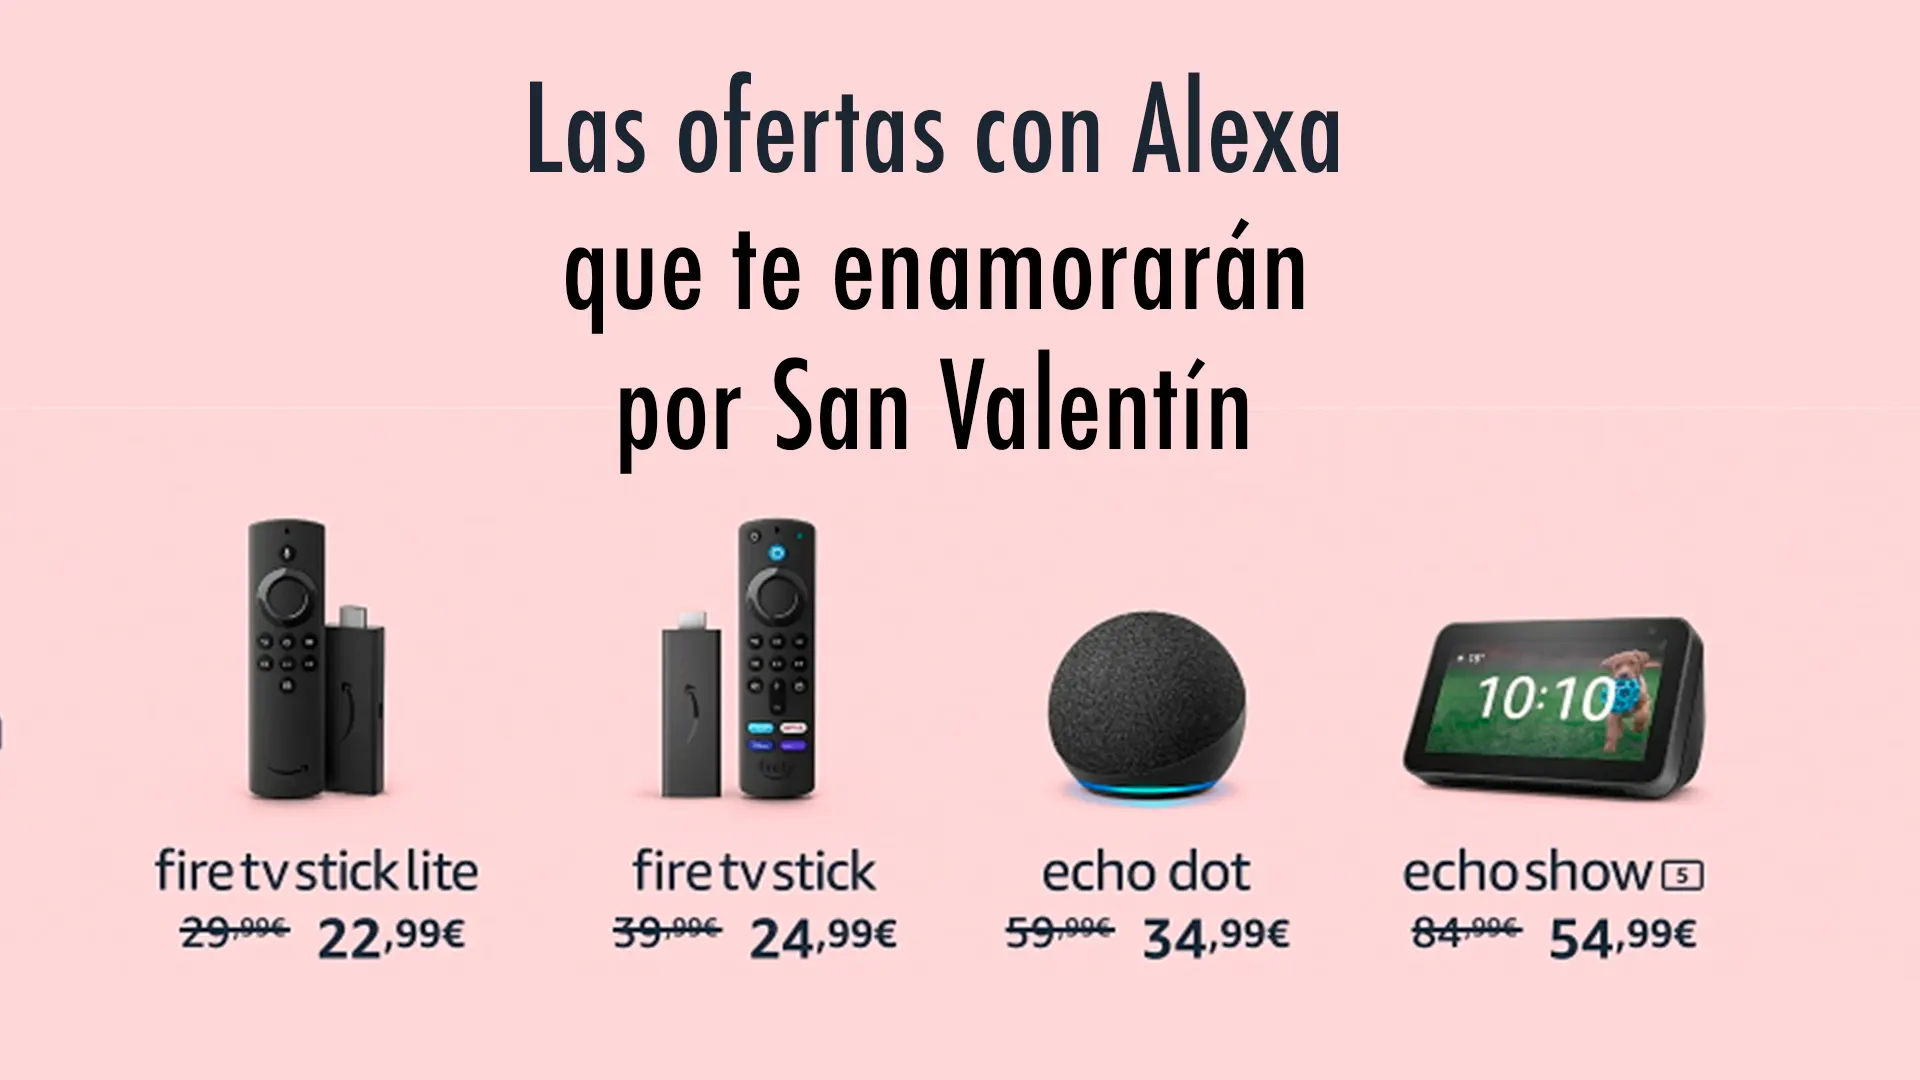 Las ofertas con Alexa que te enamorarán por San Valentín